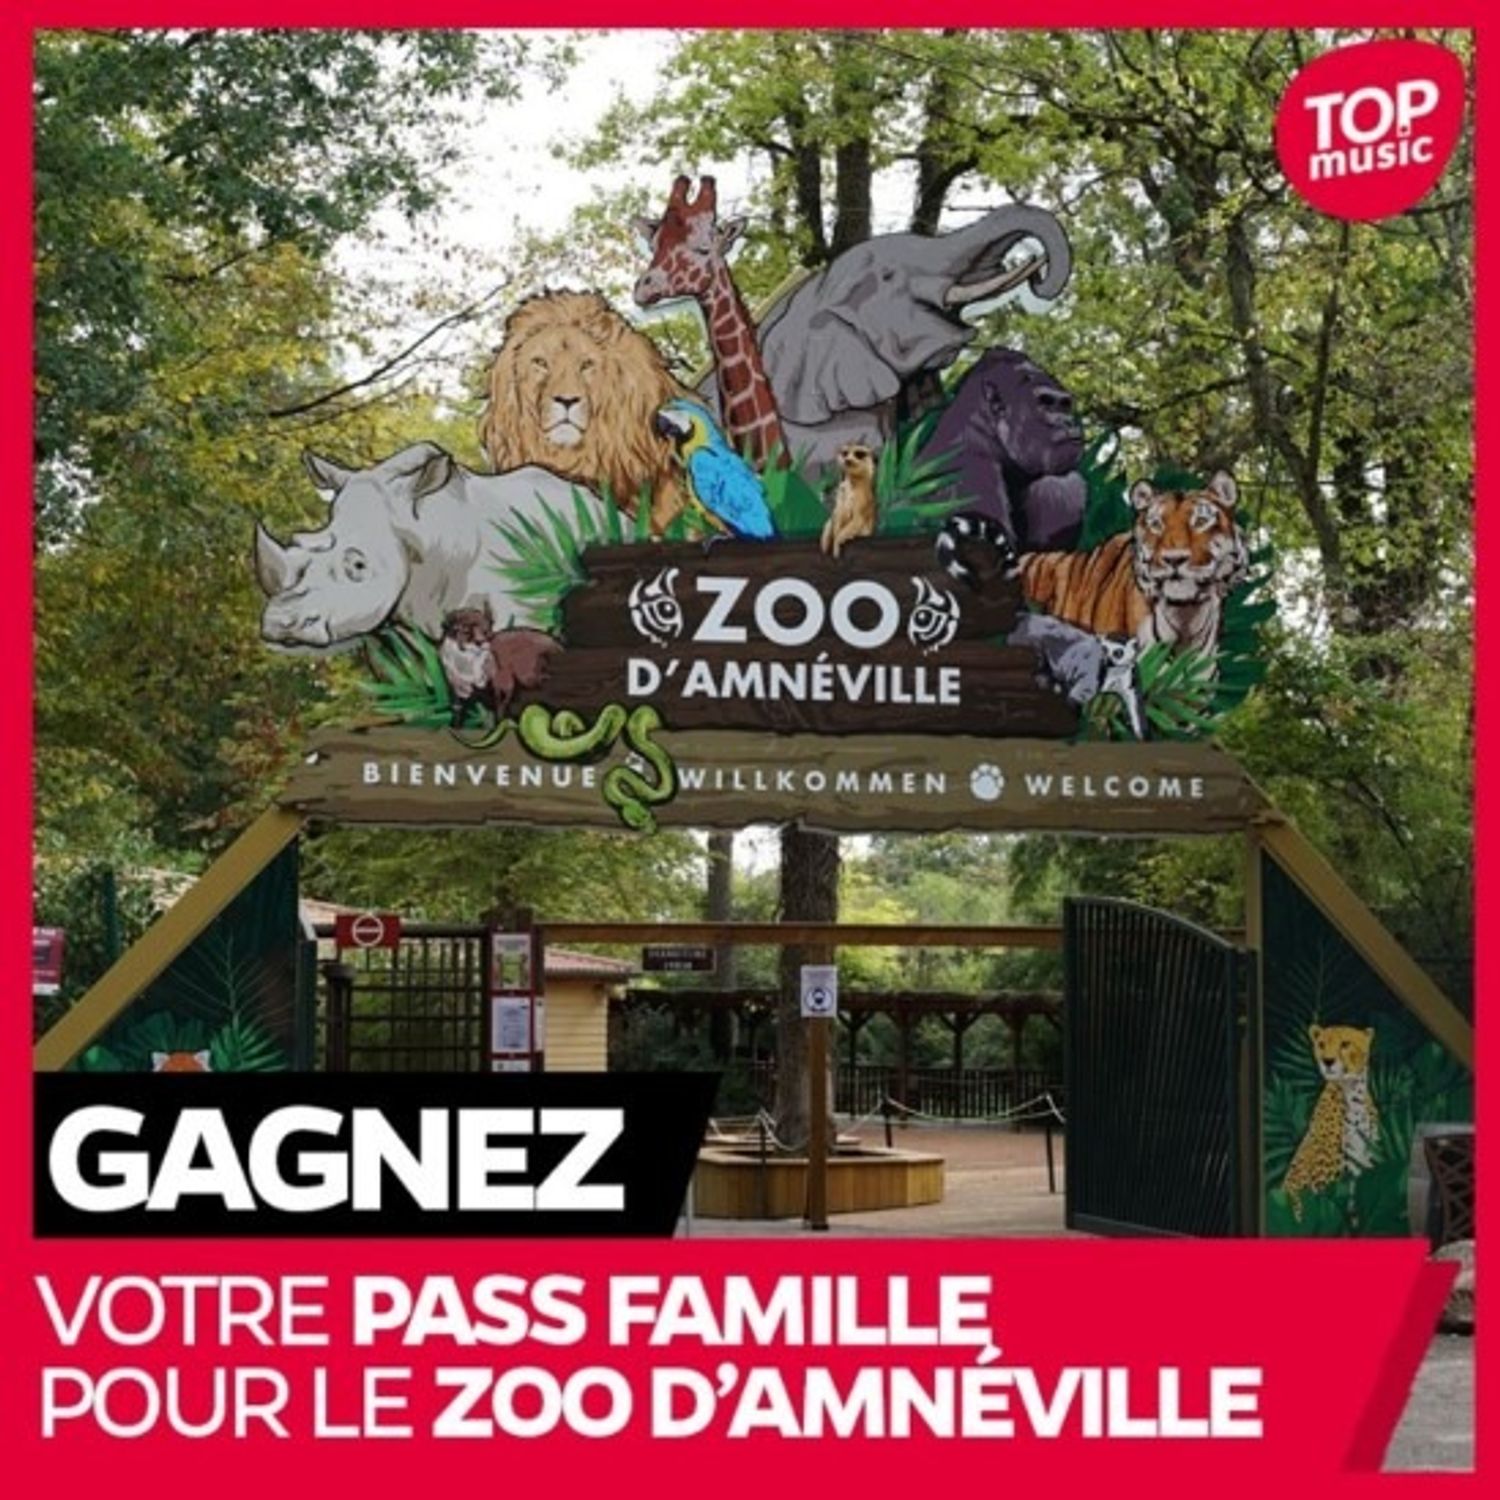 Gagnez vos pass famille pour le Zoo d'Amnéville !